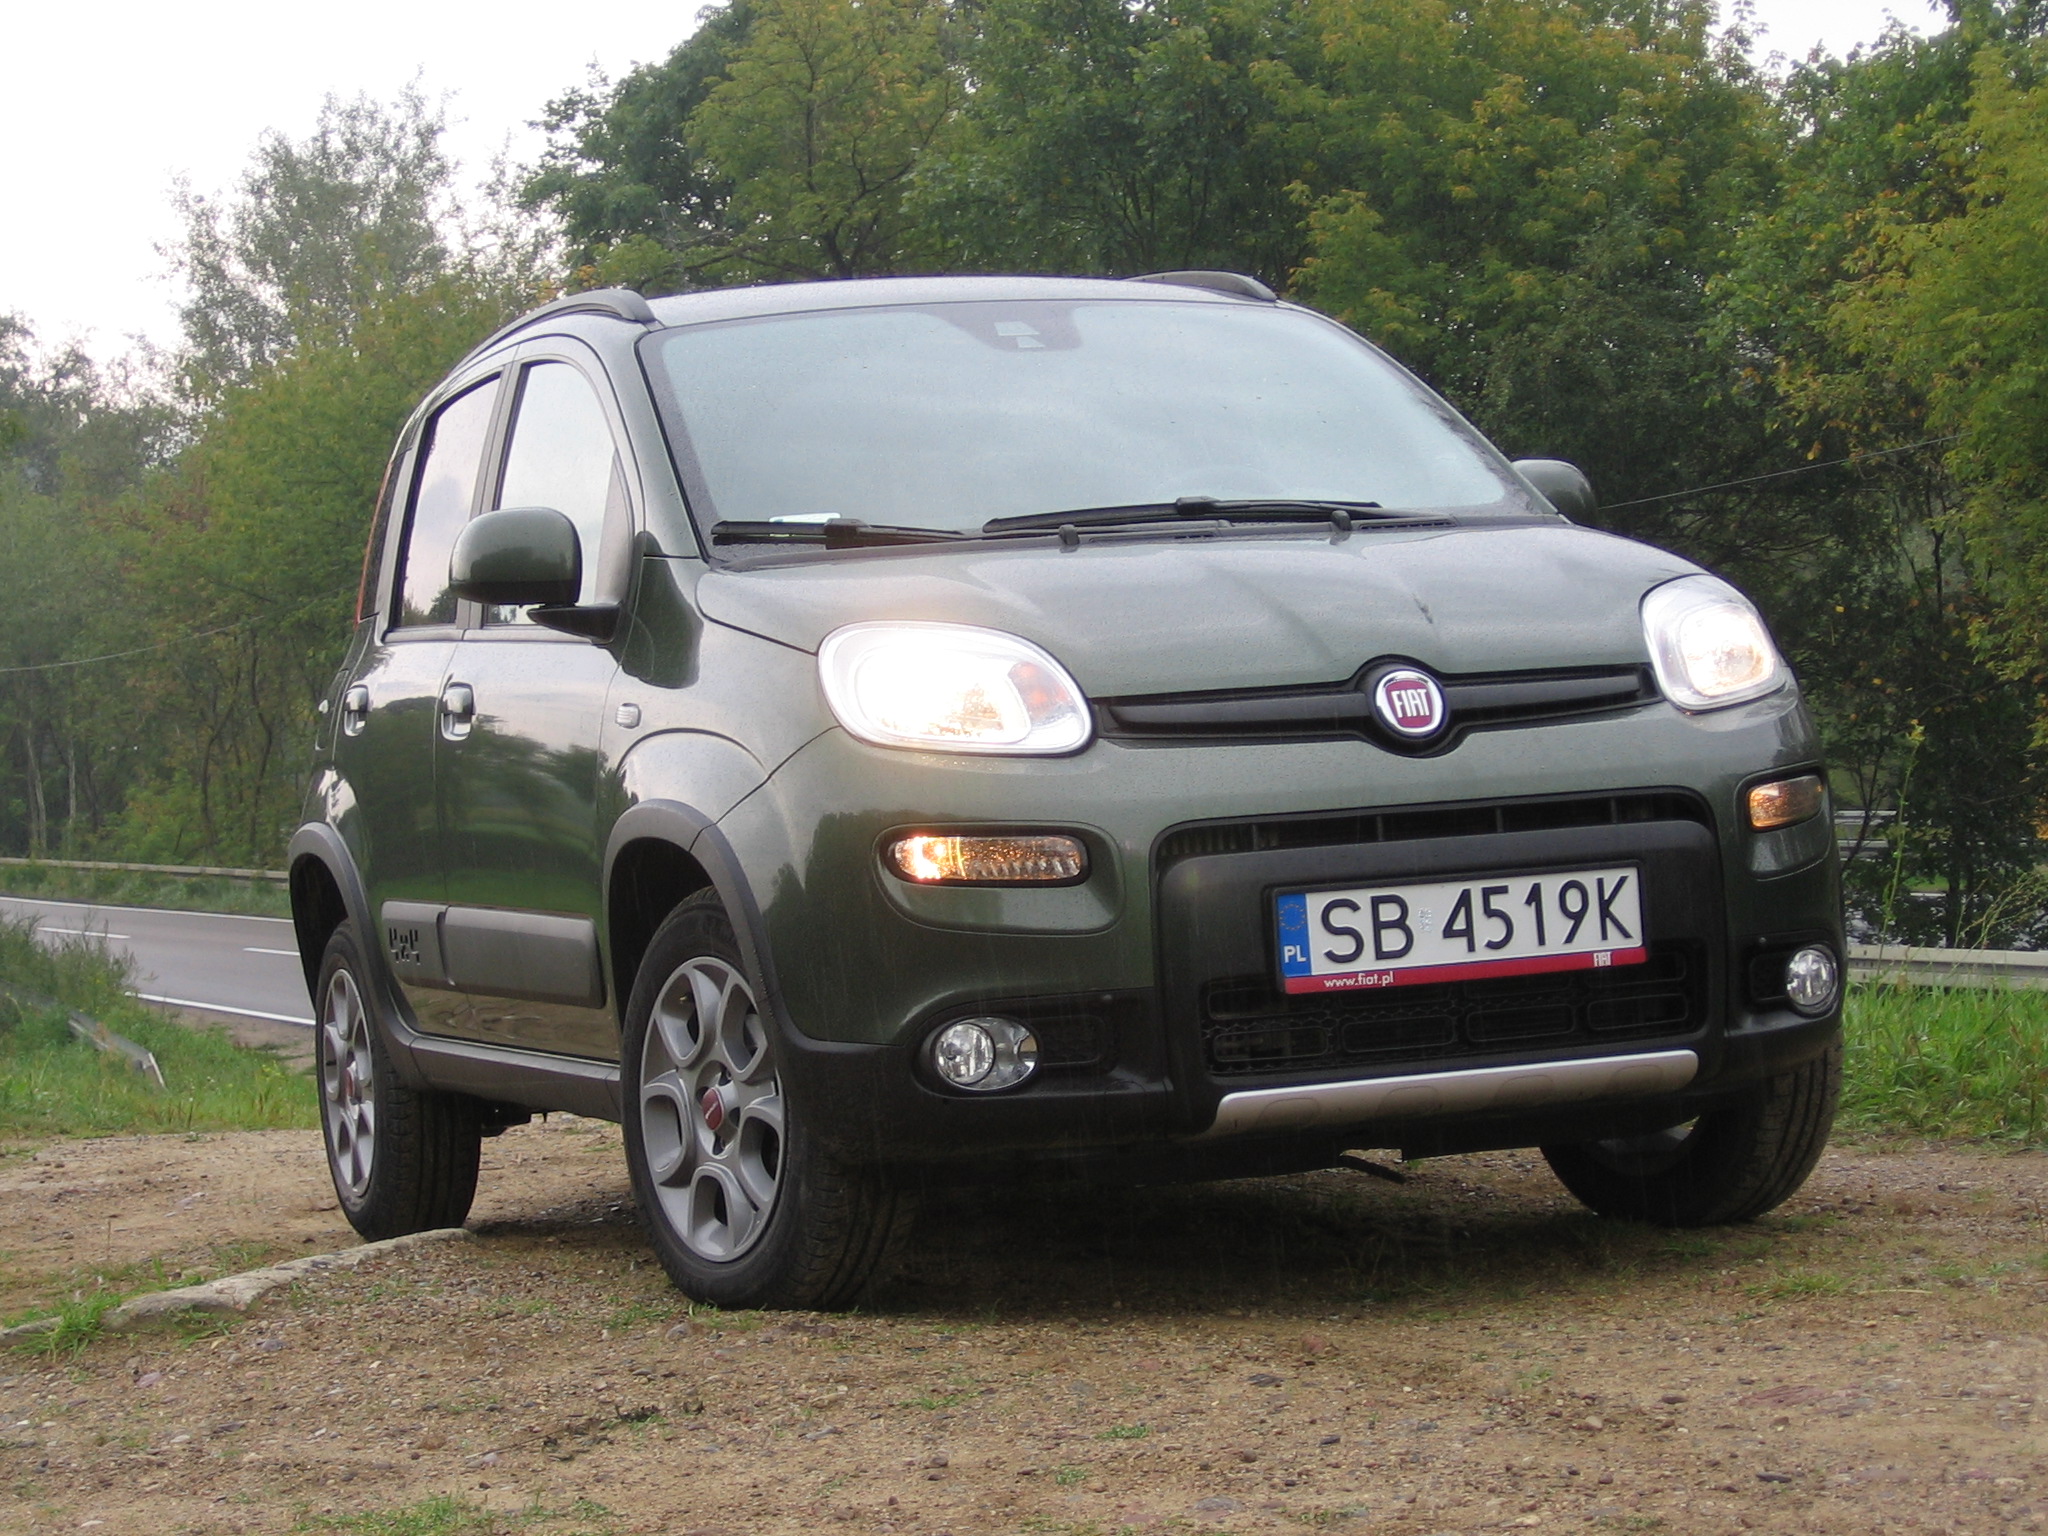 Fiat Panda 4x4 1.3 MultiJet - Mały ale dzielny